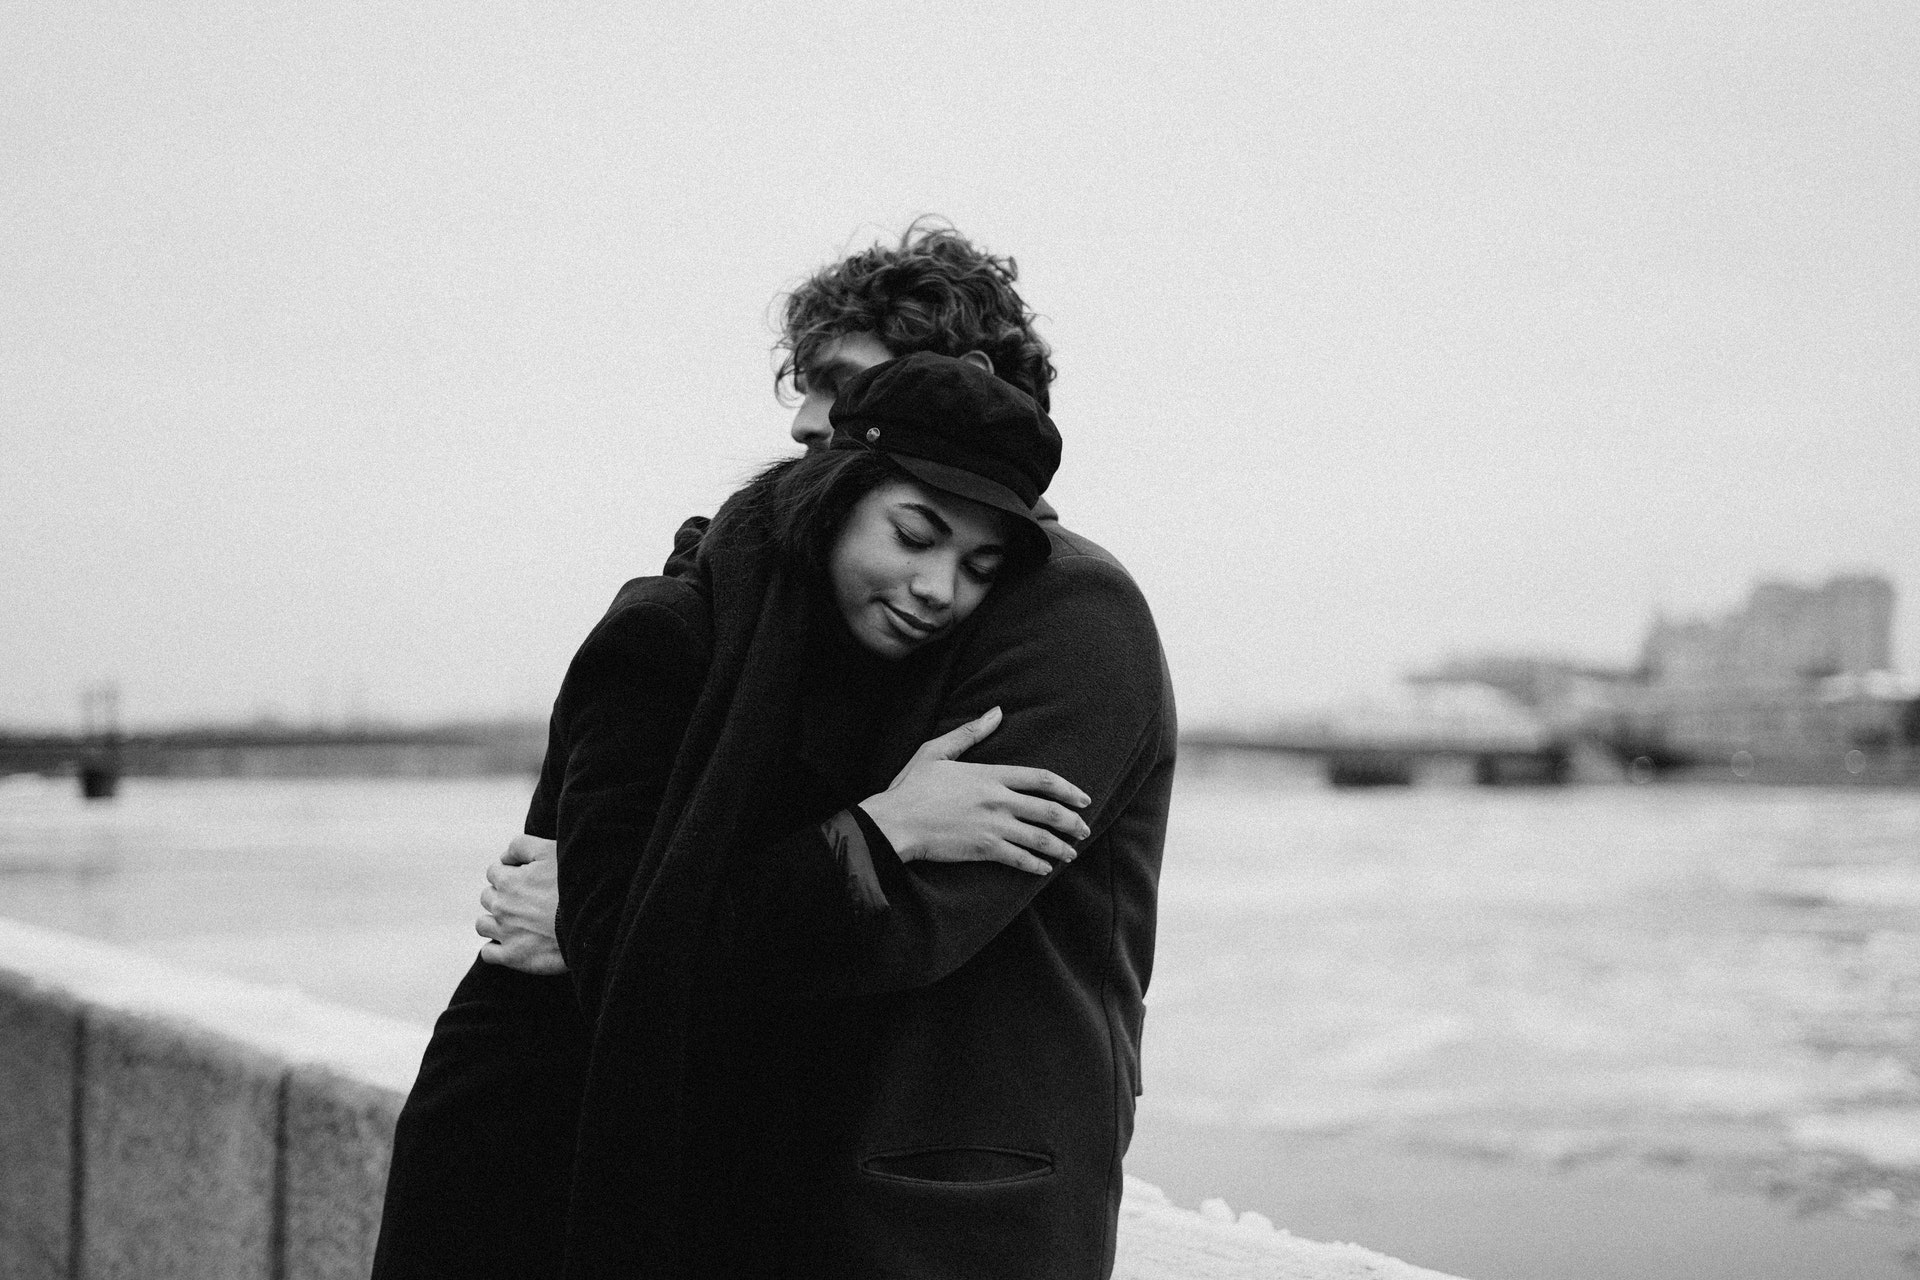 Schwarz-Weiß-Foto eines sich umarmenden Paares